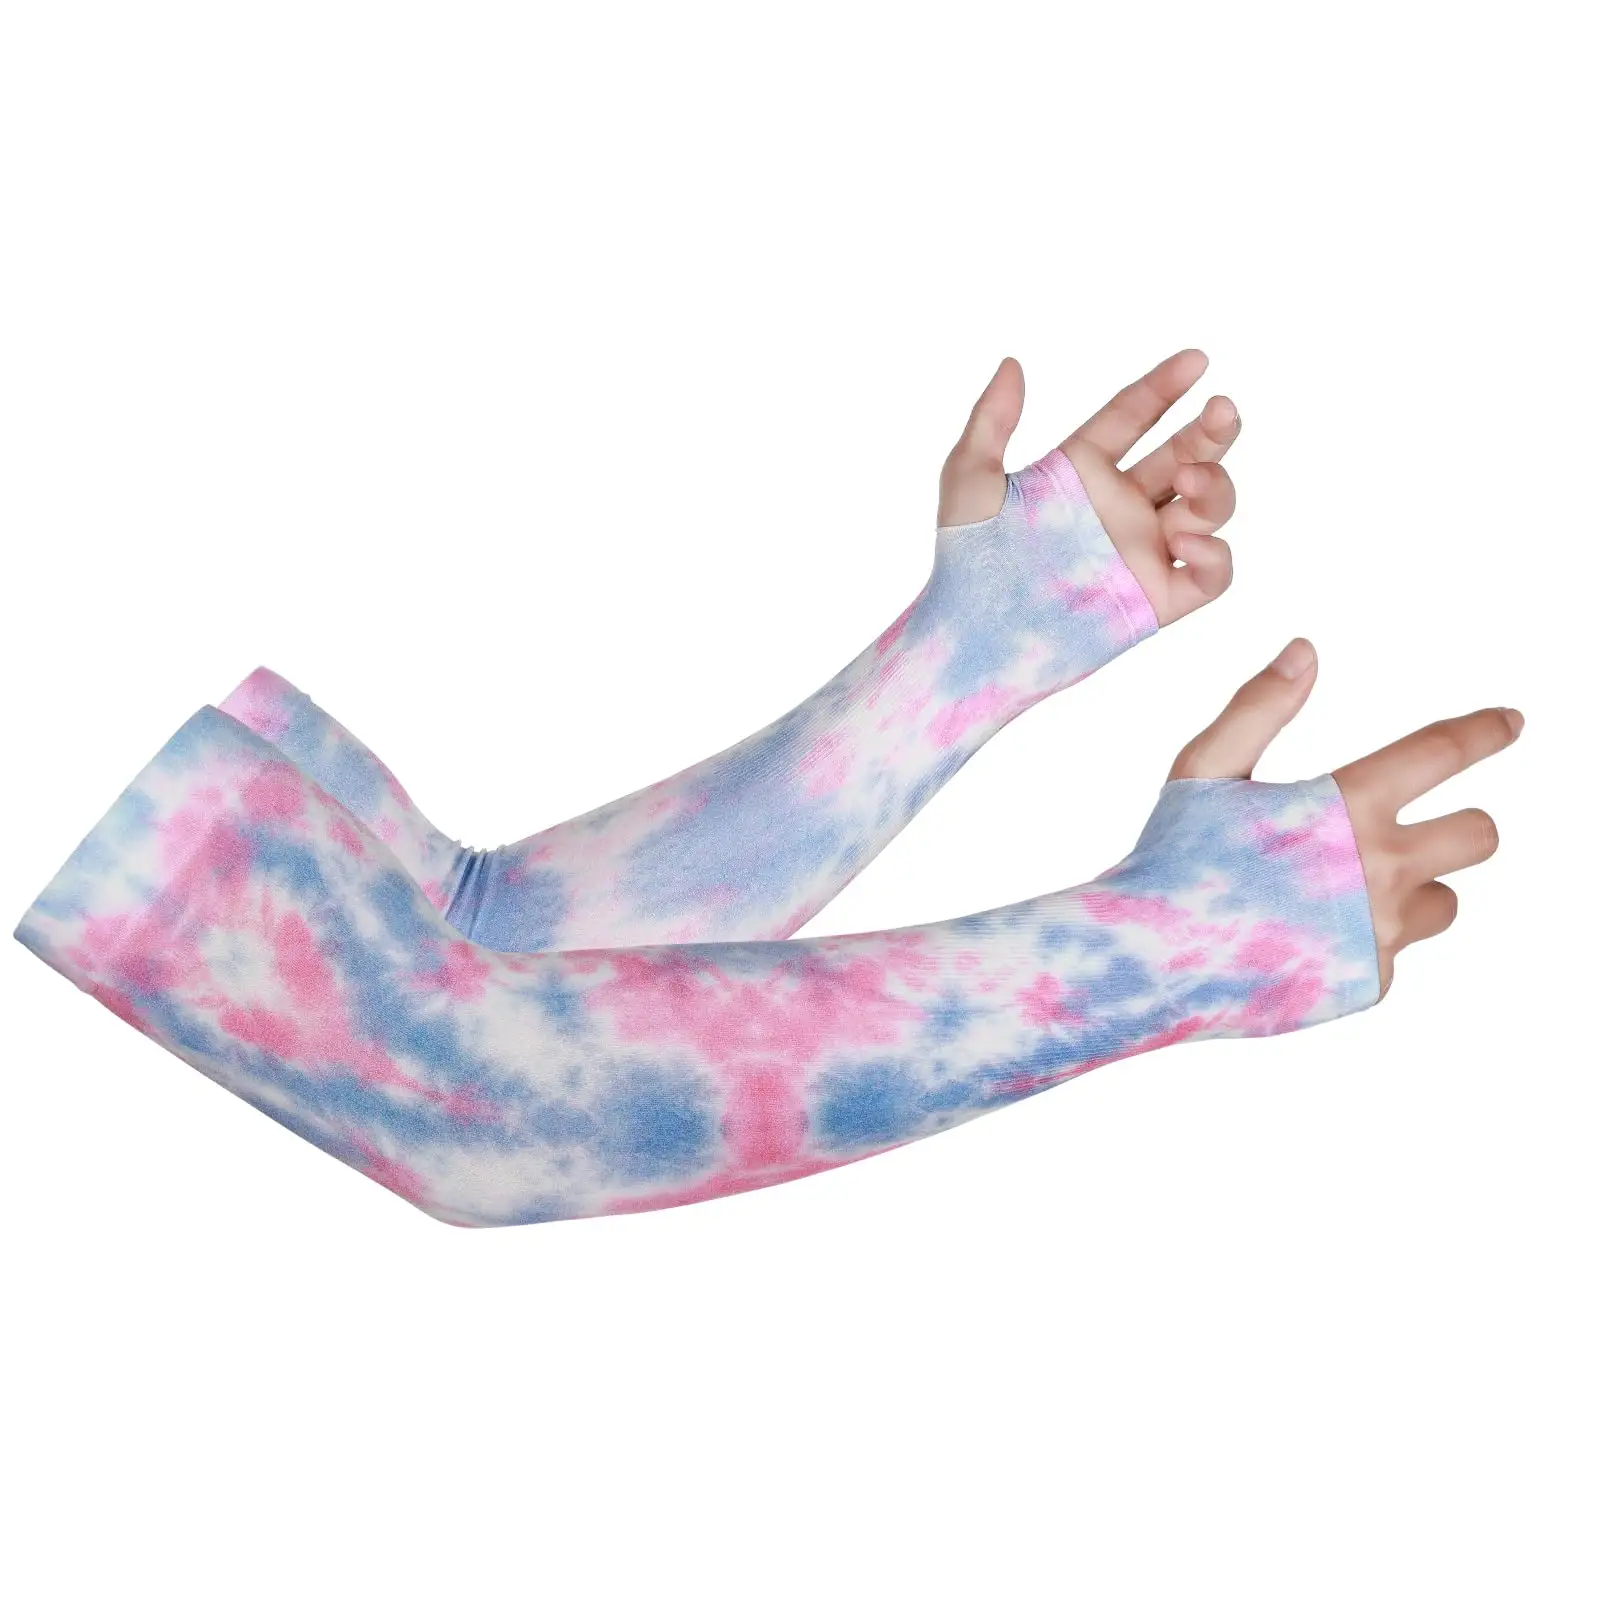 Mangas de brazo de seda helada al por mayor mangas de compresión protección solar UV de verano UPF 50 + para mujeres mangas de brazo